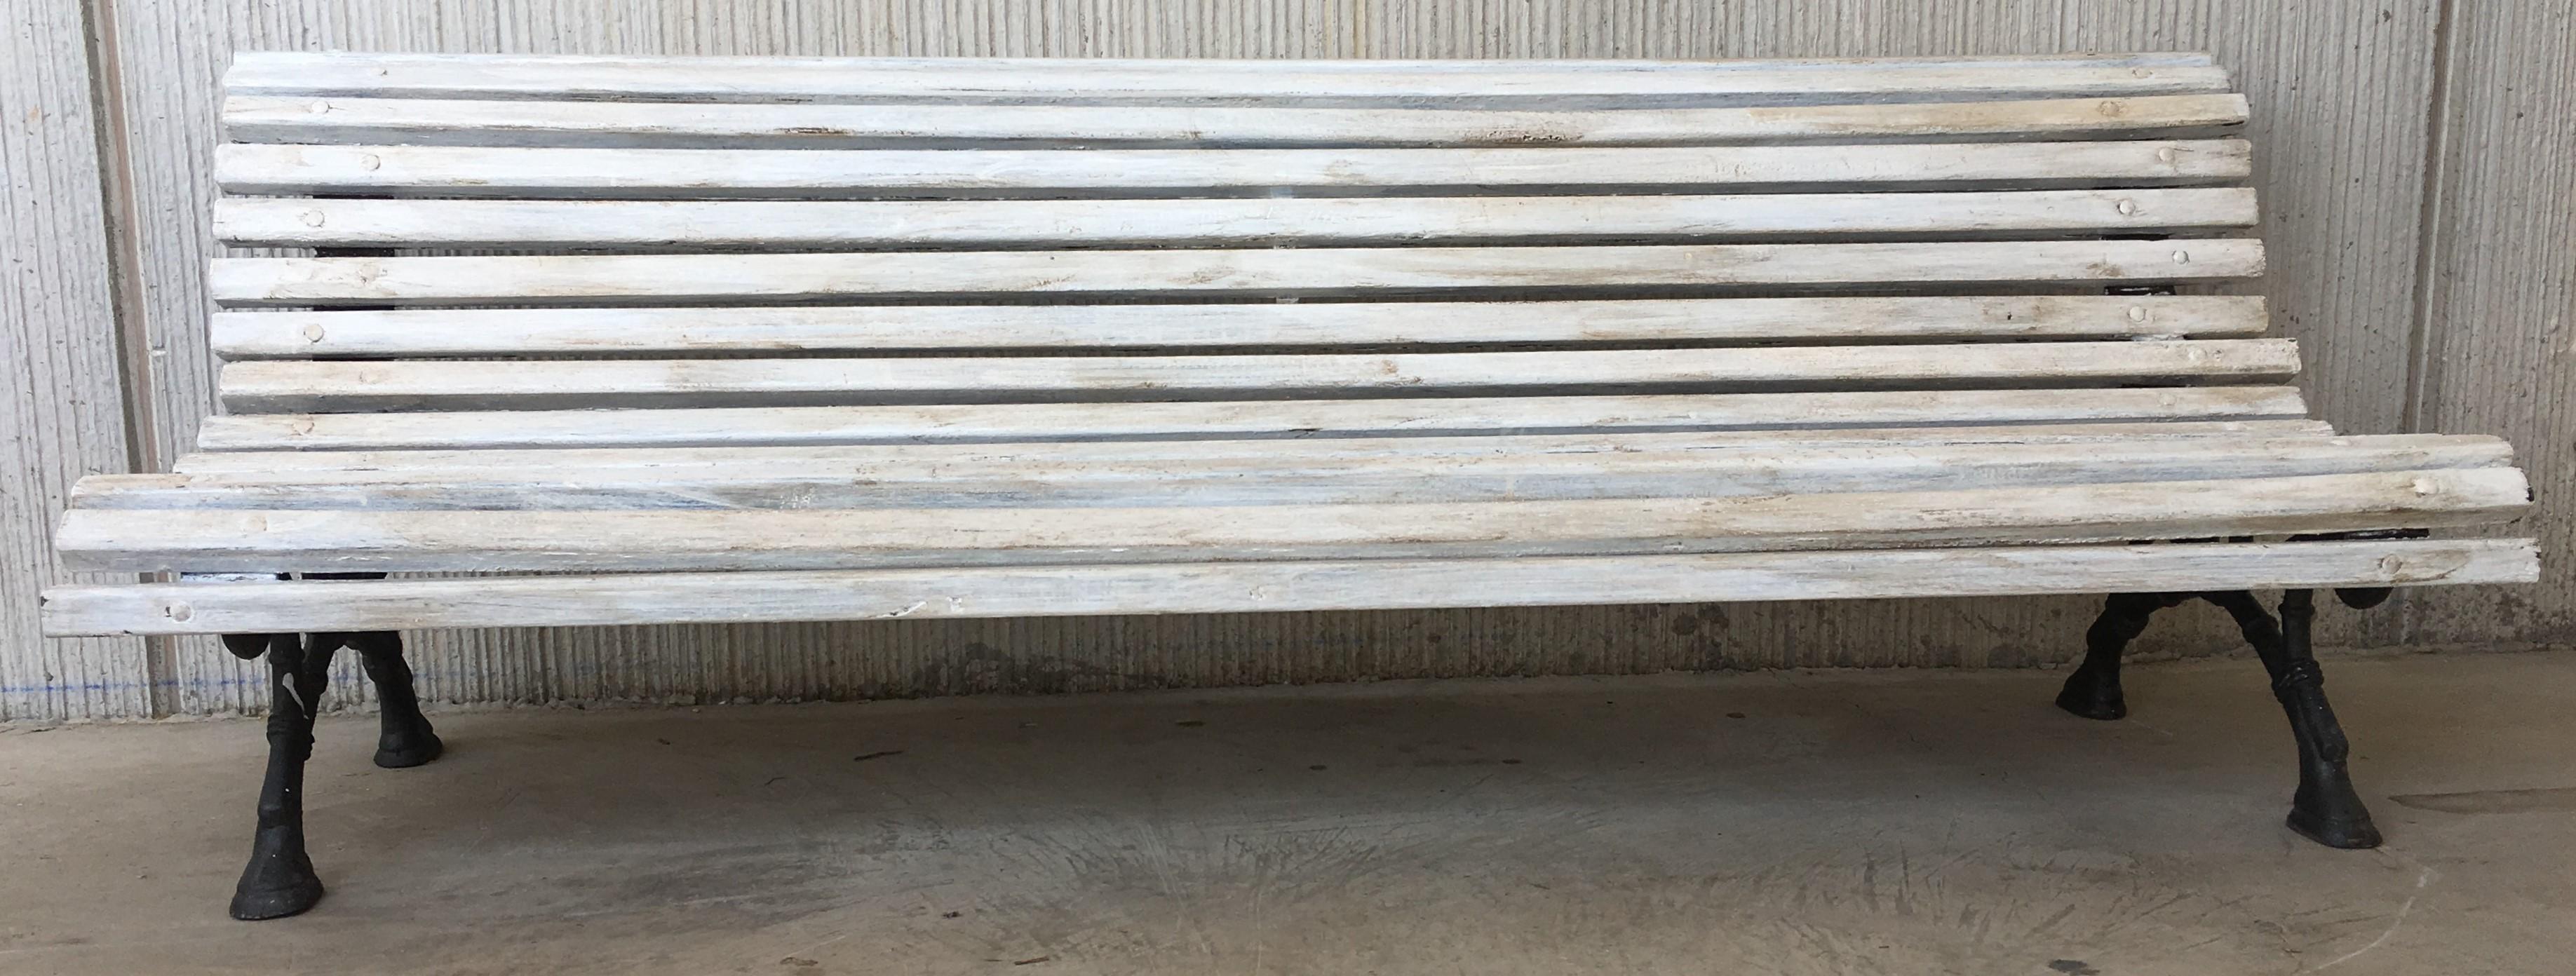 wood slats for park bench